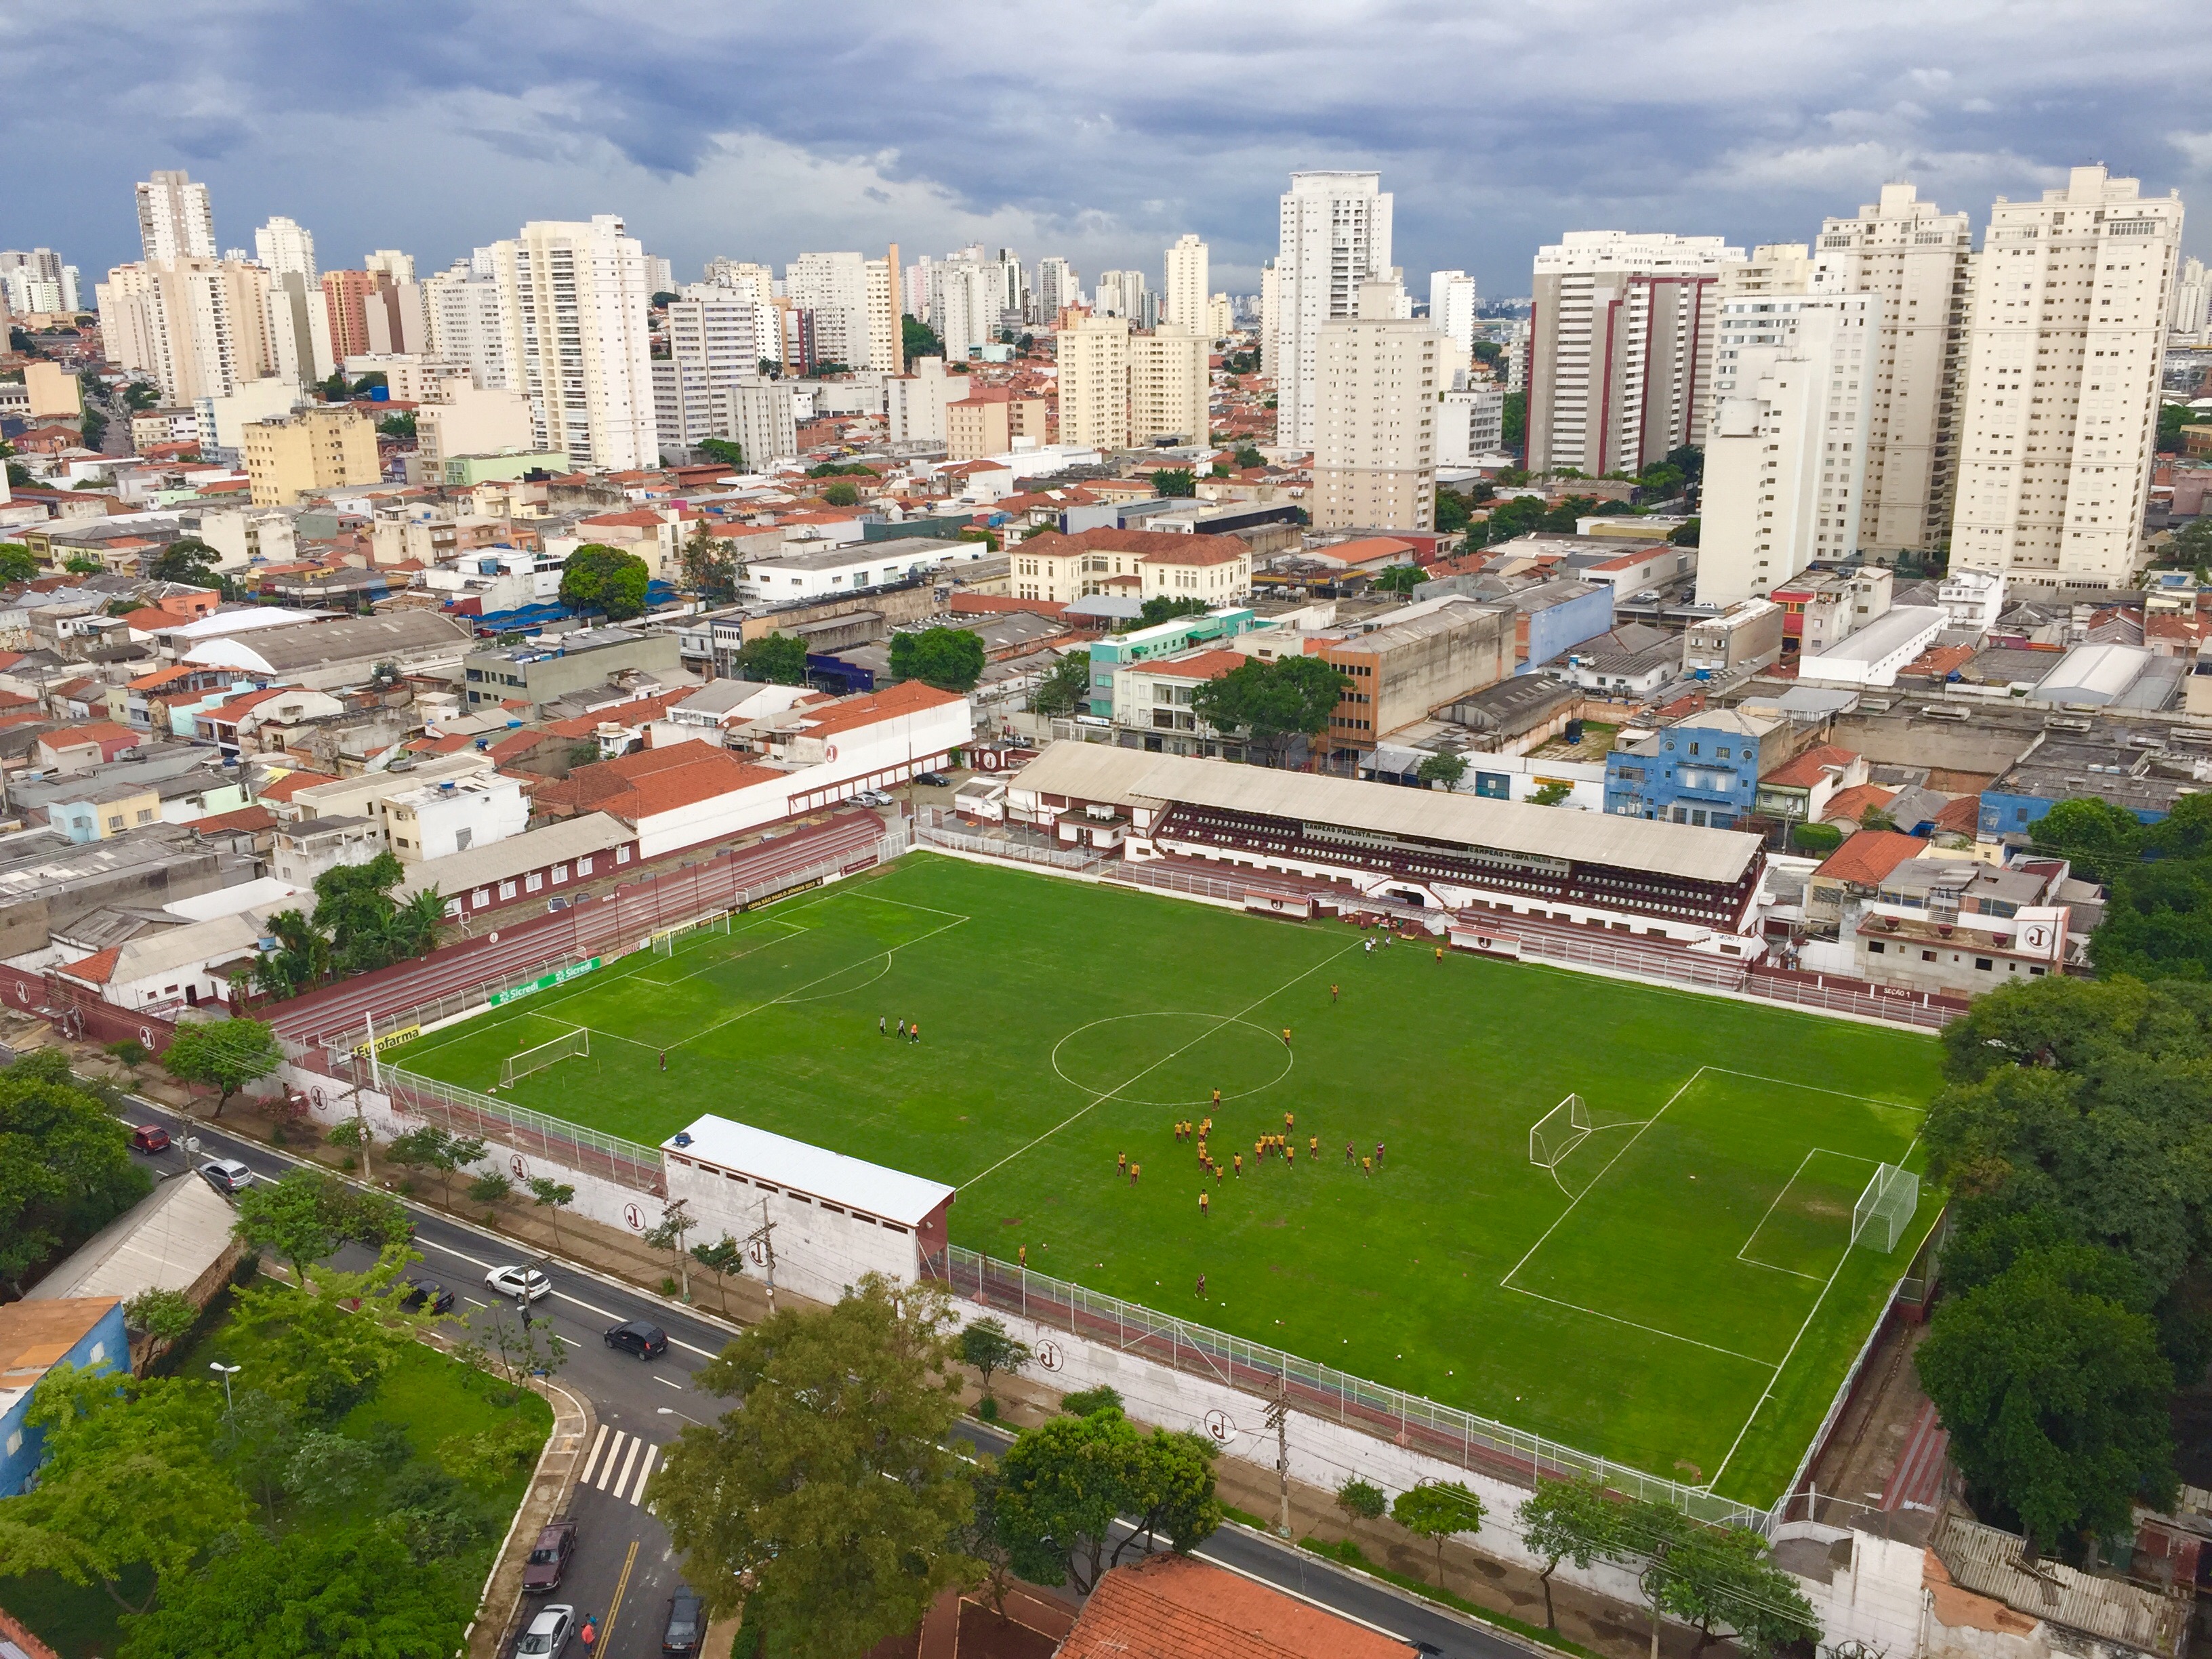 Os prédios vizinhos ao Estádio, podem assistir aos jogos e aos treinos com uma vista privilegiada. Foto: AMF / Blog Tirando Férias